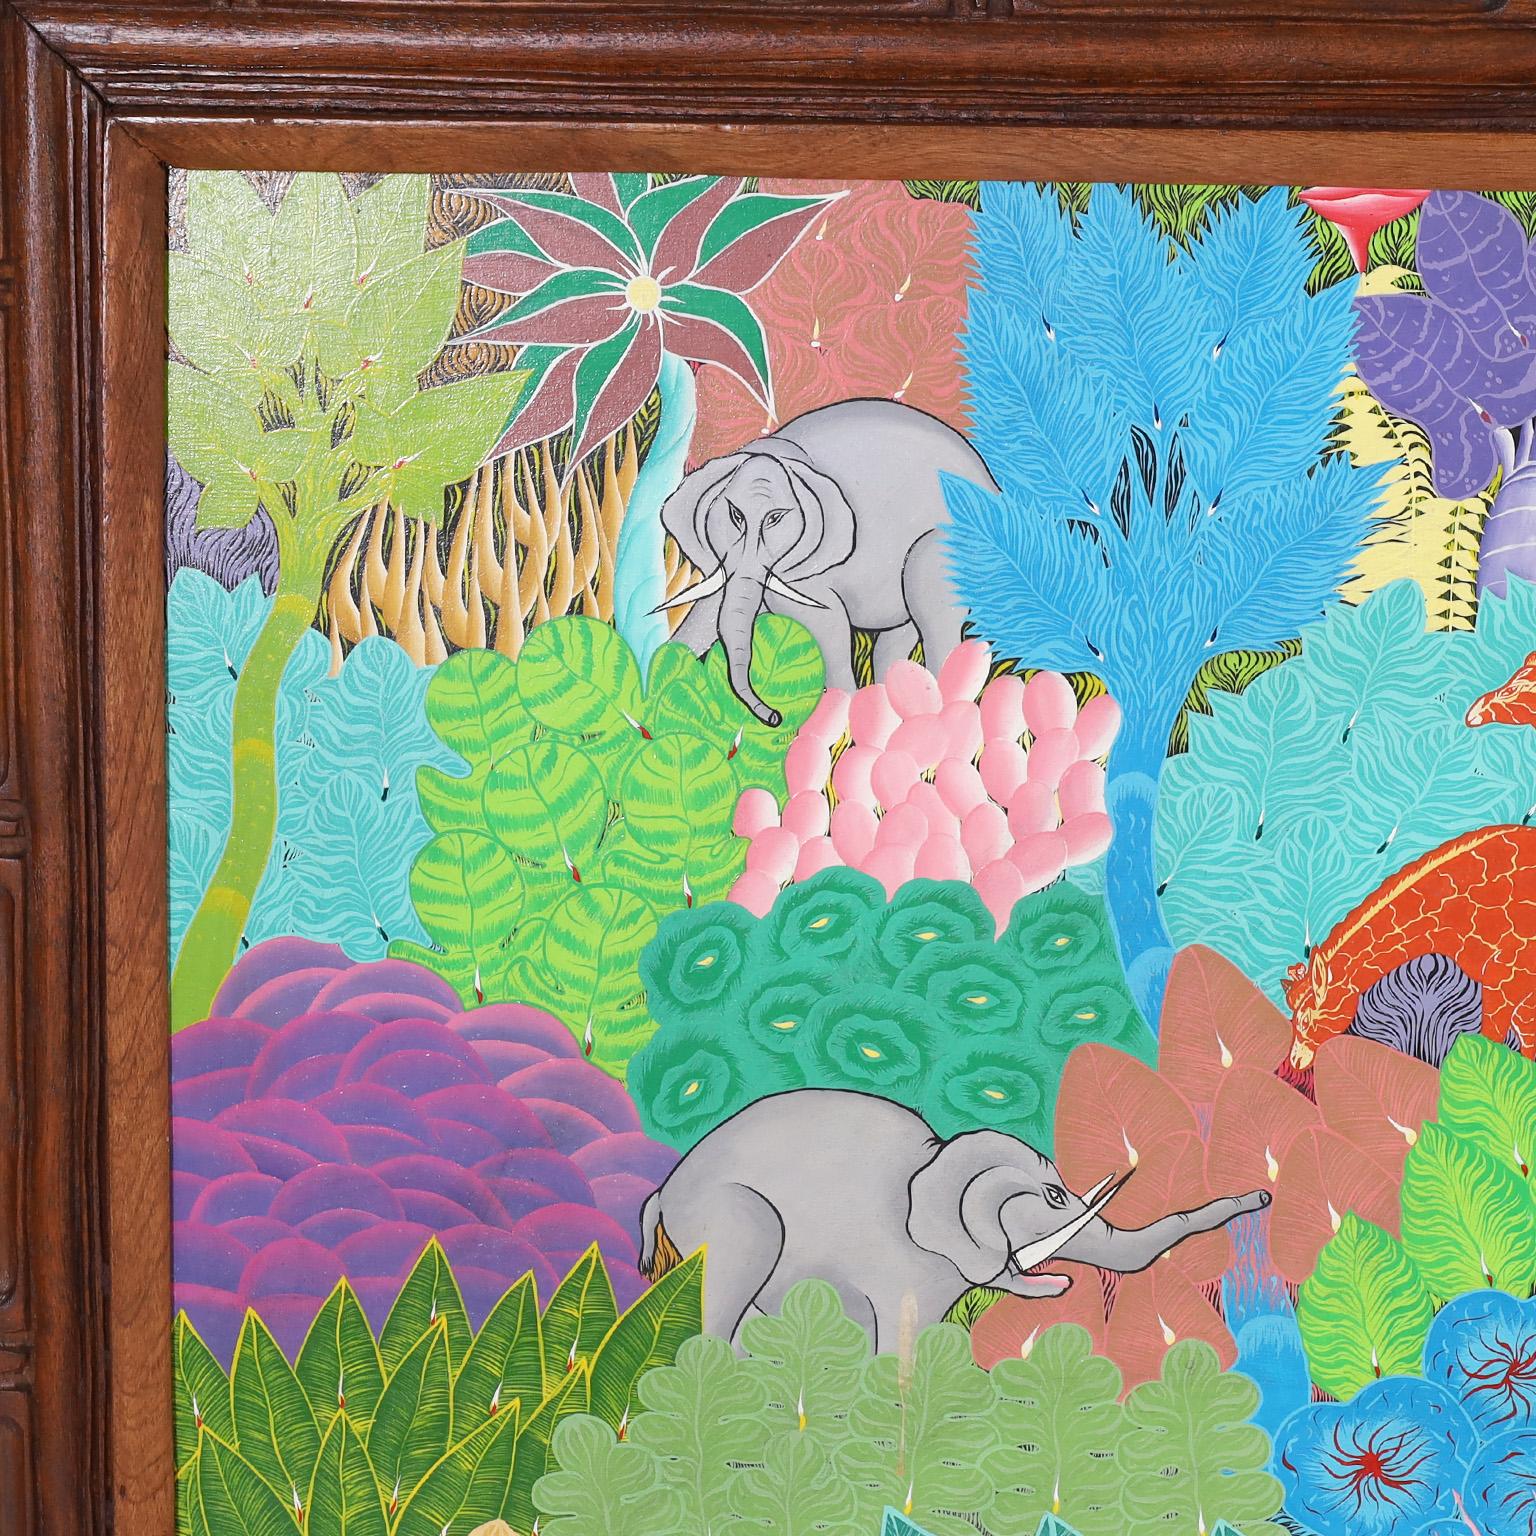 Remarquable peinture acrylique haïtienne vintage sur toile d'animaux africains dans un décor de jungle, exécutée dans un style naïf distinctif. Signé par le célèbre artiste Eustache Loubert et présenté dans son cadre original en acajou.